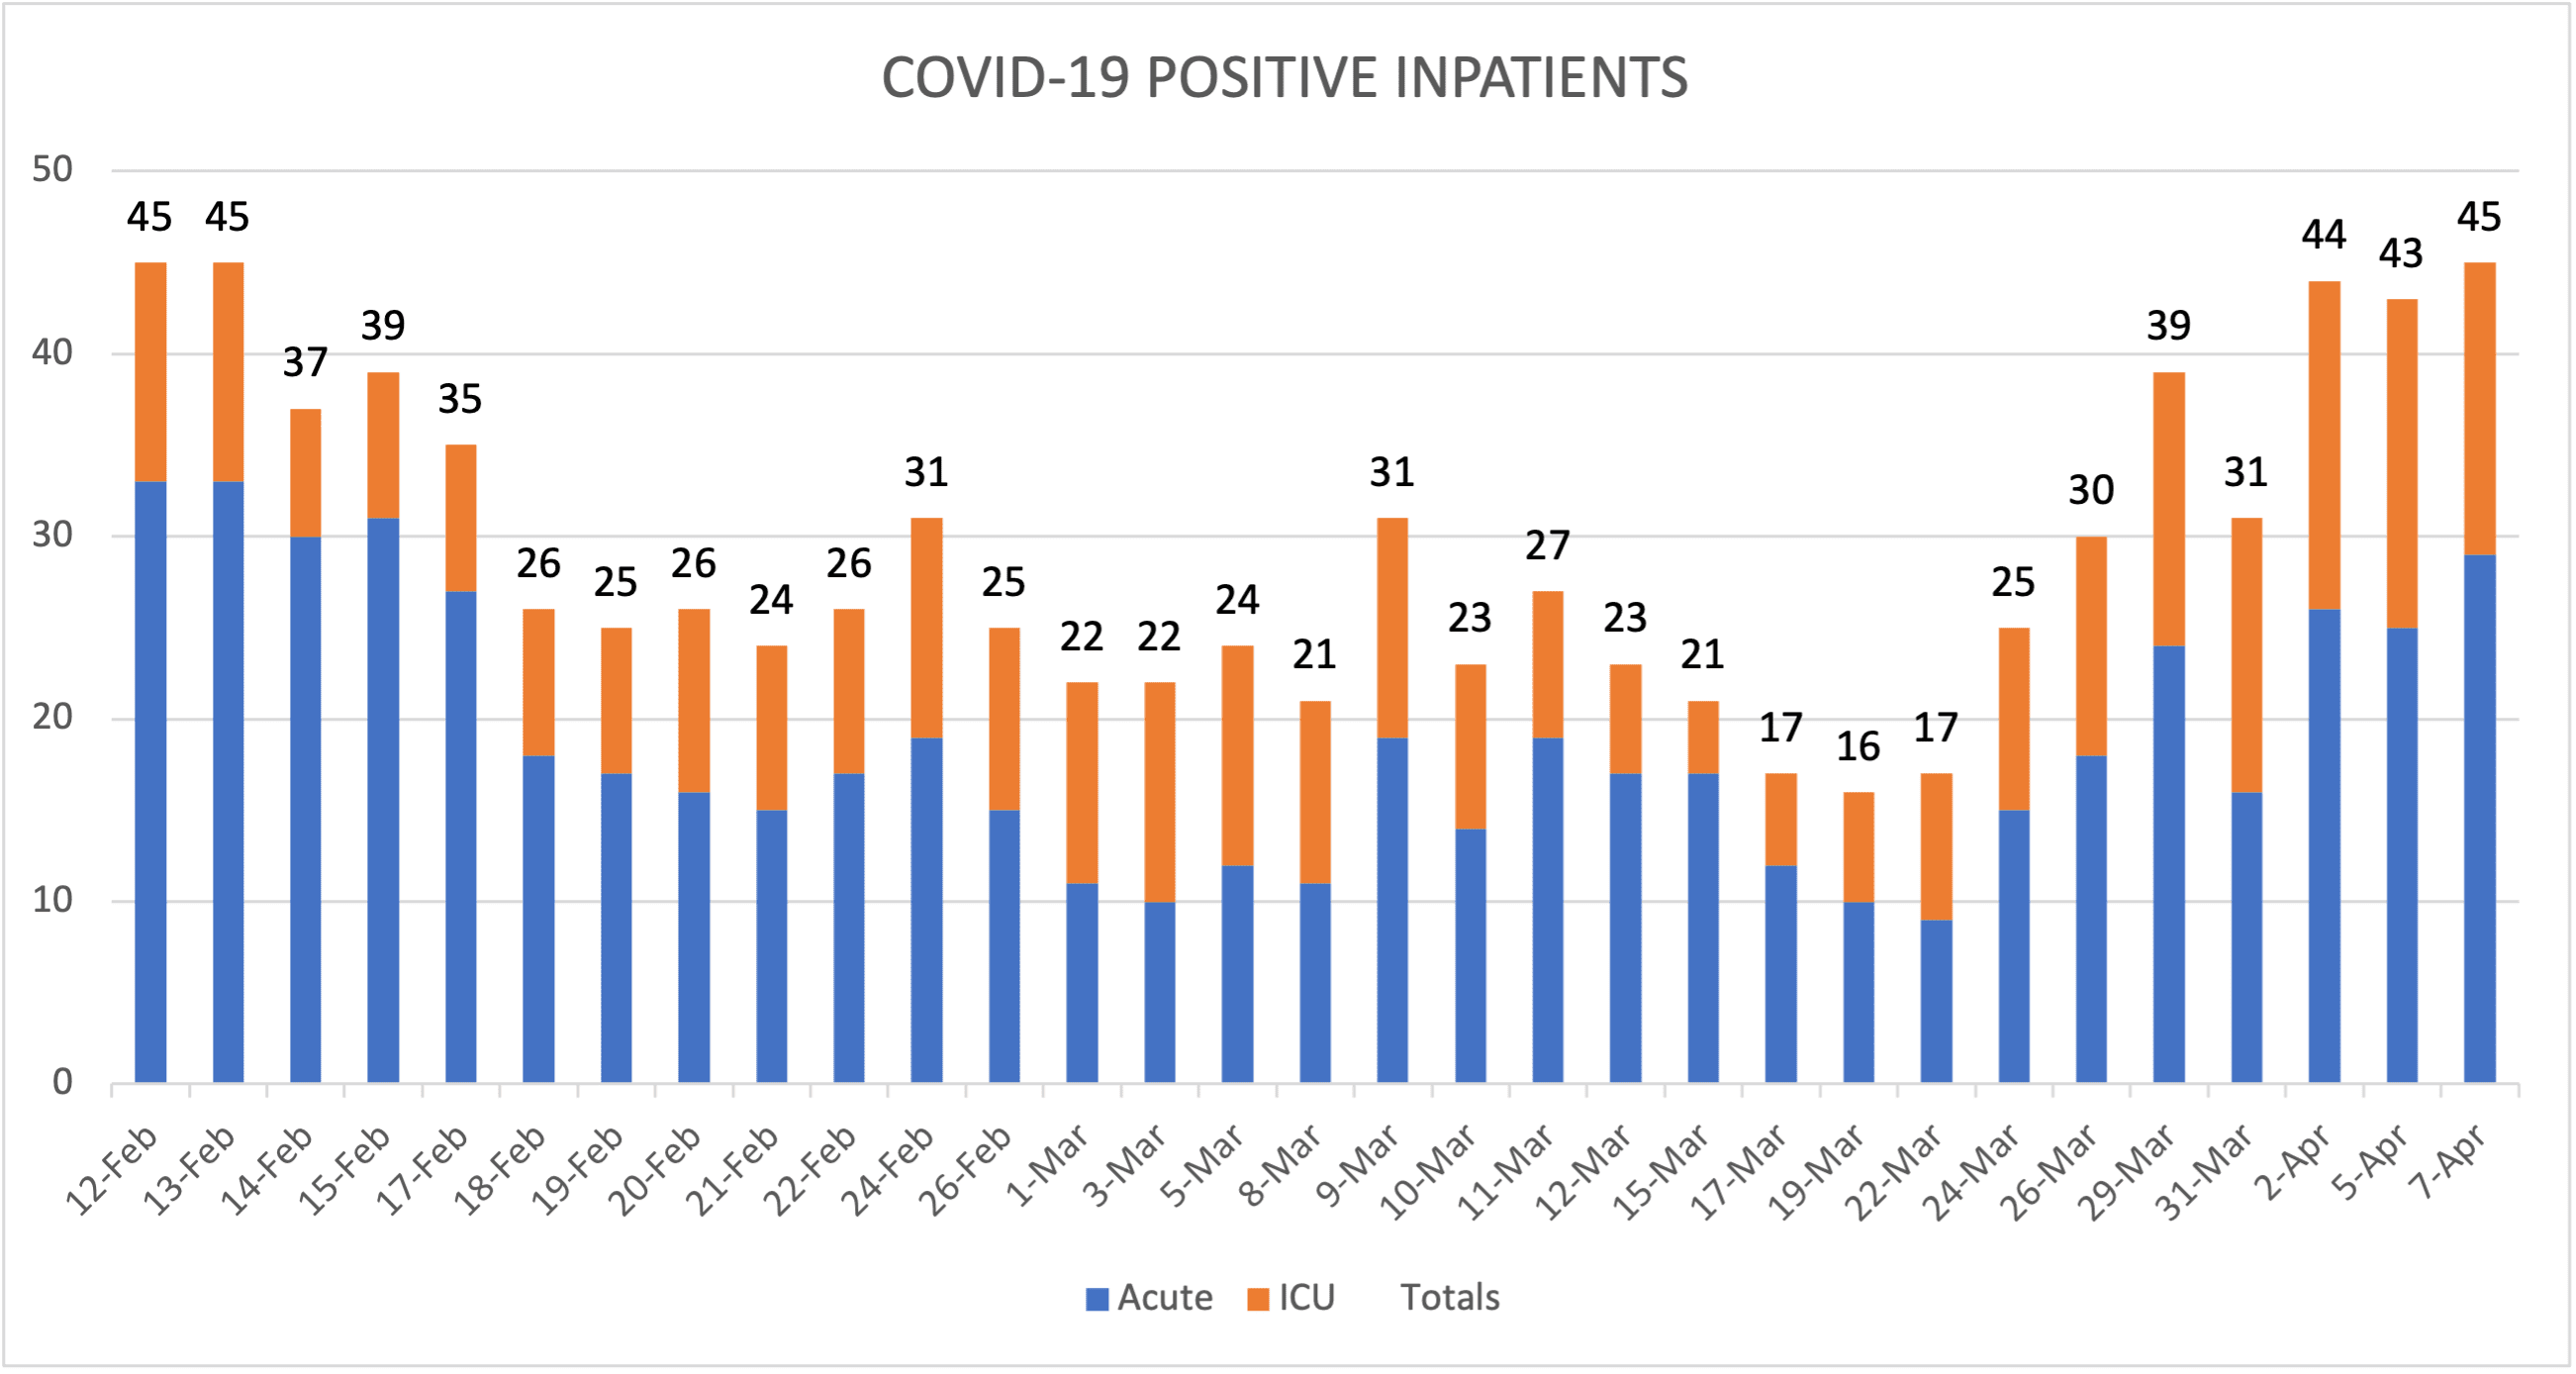 COVID-19 Positive Inpatients April 7